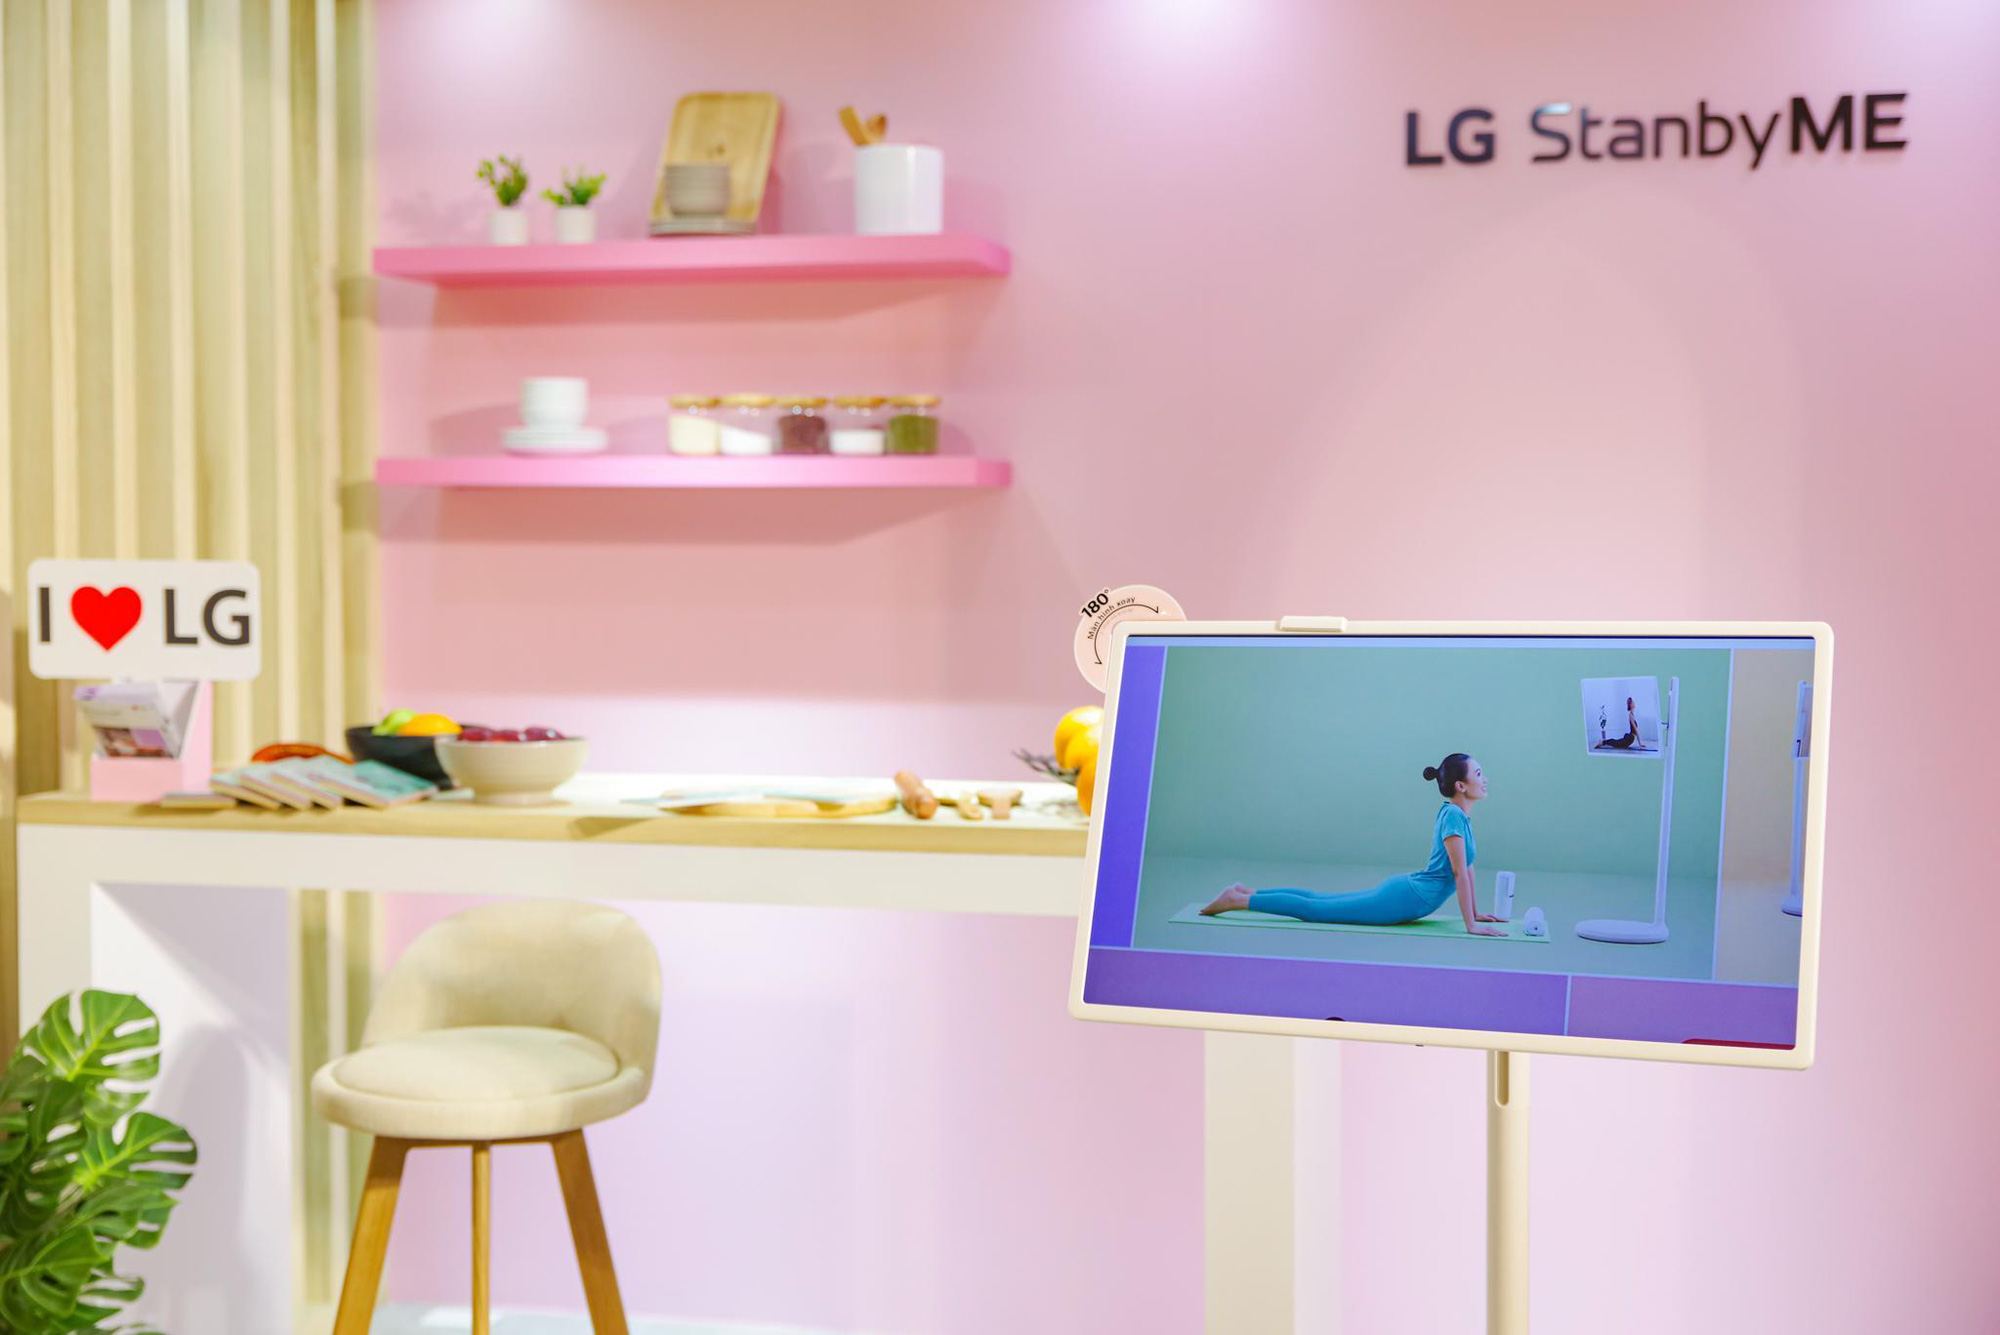 Người dùng Việt thích thú khi lần đầu trải nghiệm LG StanbyME: “Chưa từng thấy thiết bị cá nhân nào thú vị đến vậy” - Ảnh 1.